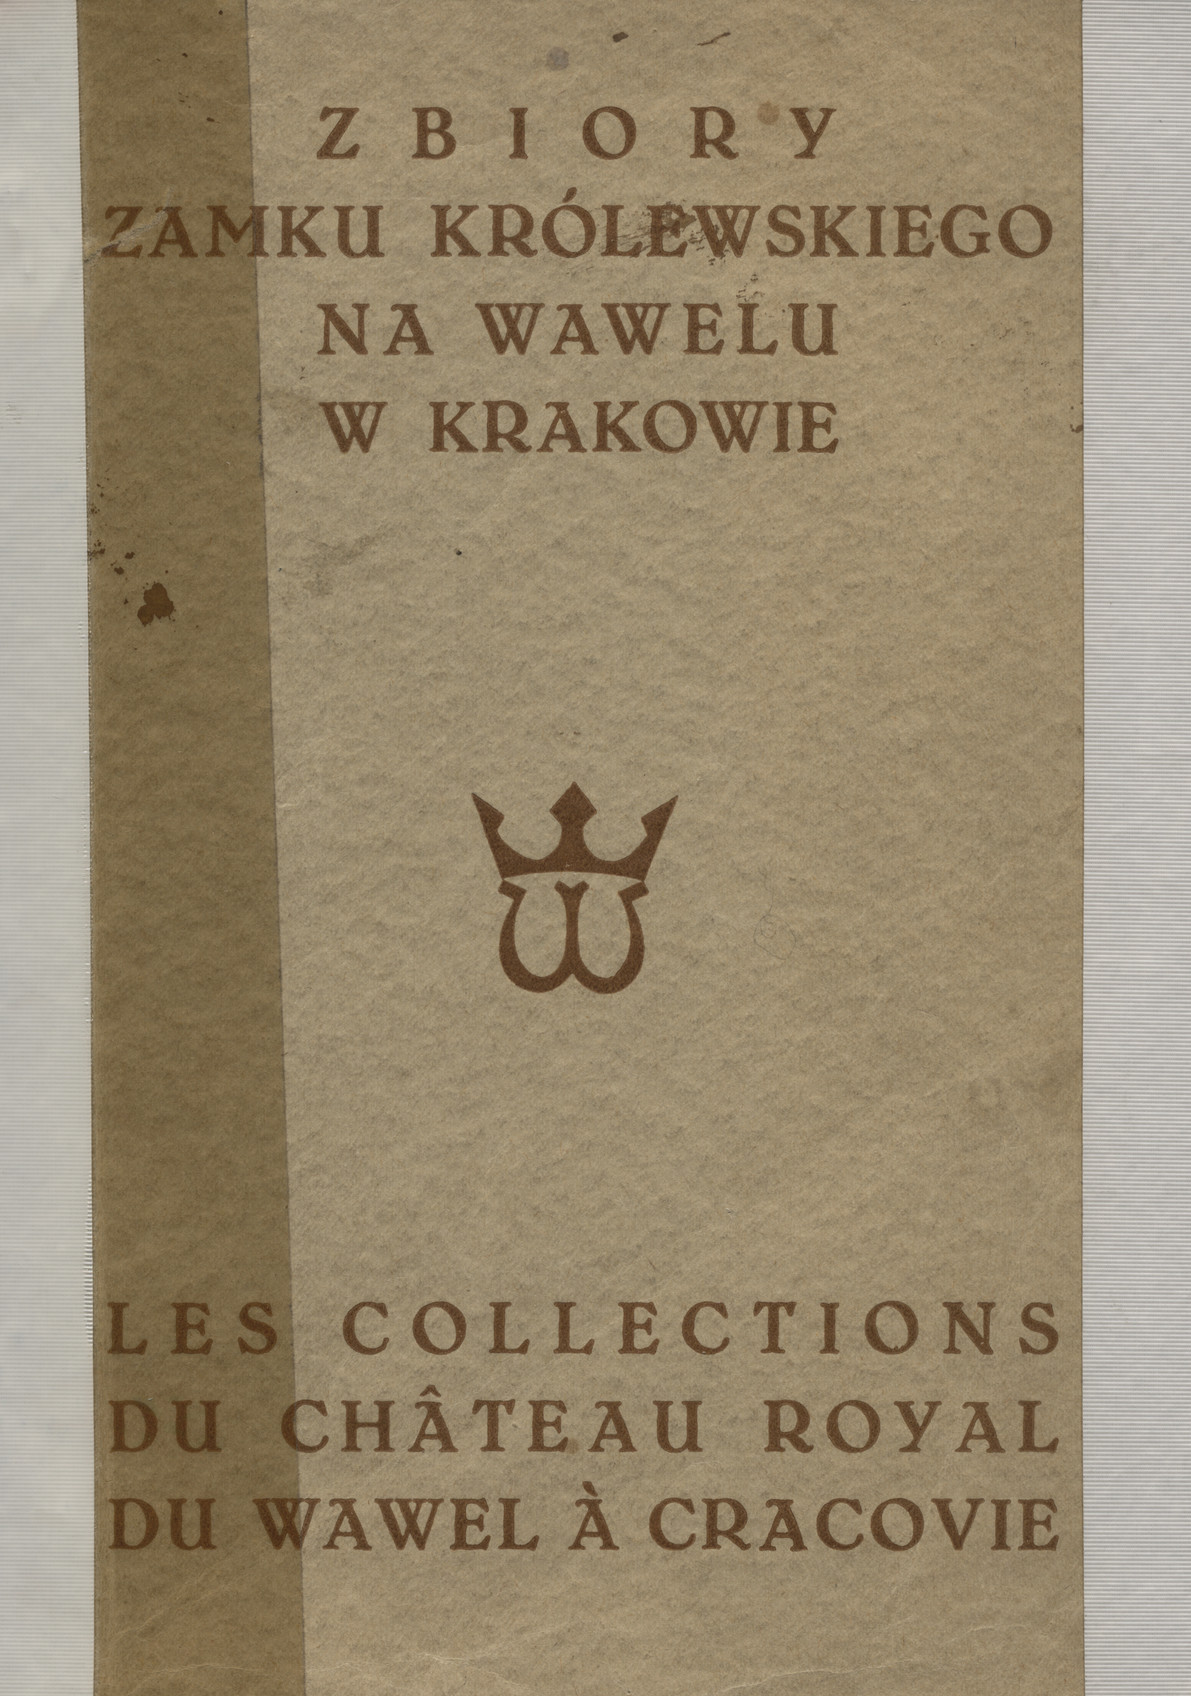 Zbiory zamku królewskiego na Wawelu w Krakowie = Les collections du château royal du Wawel à Cracovie